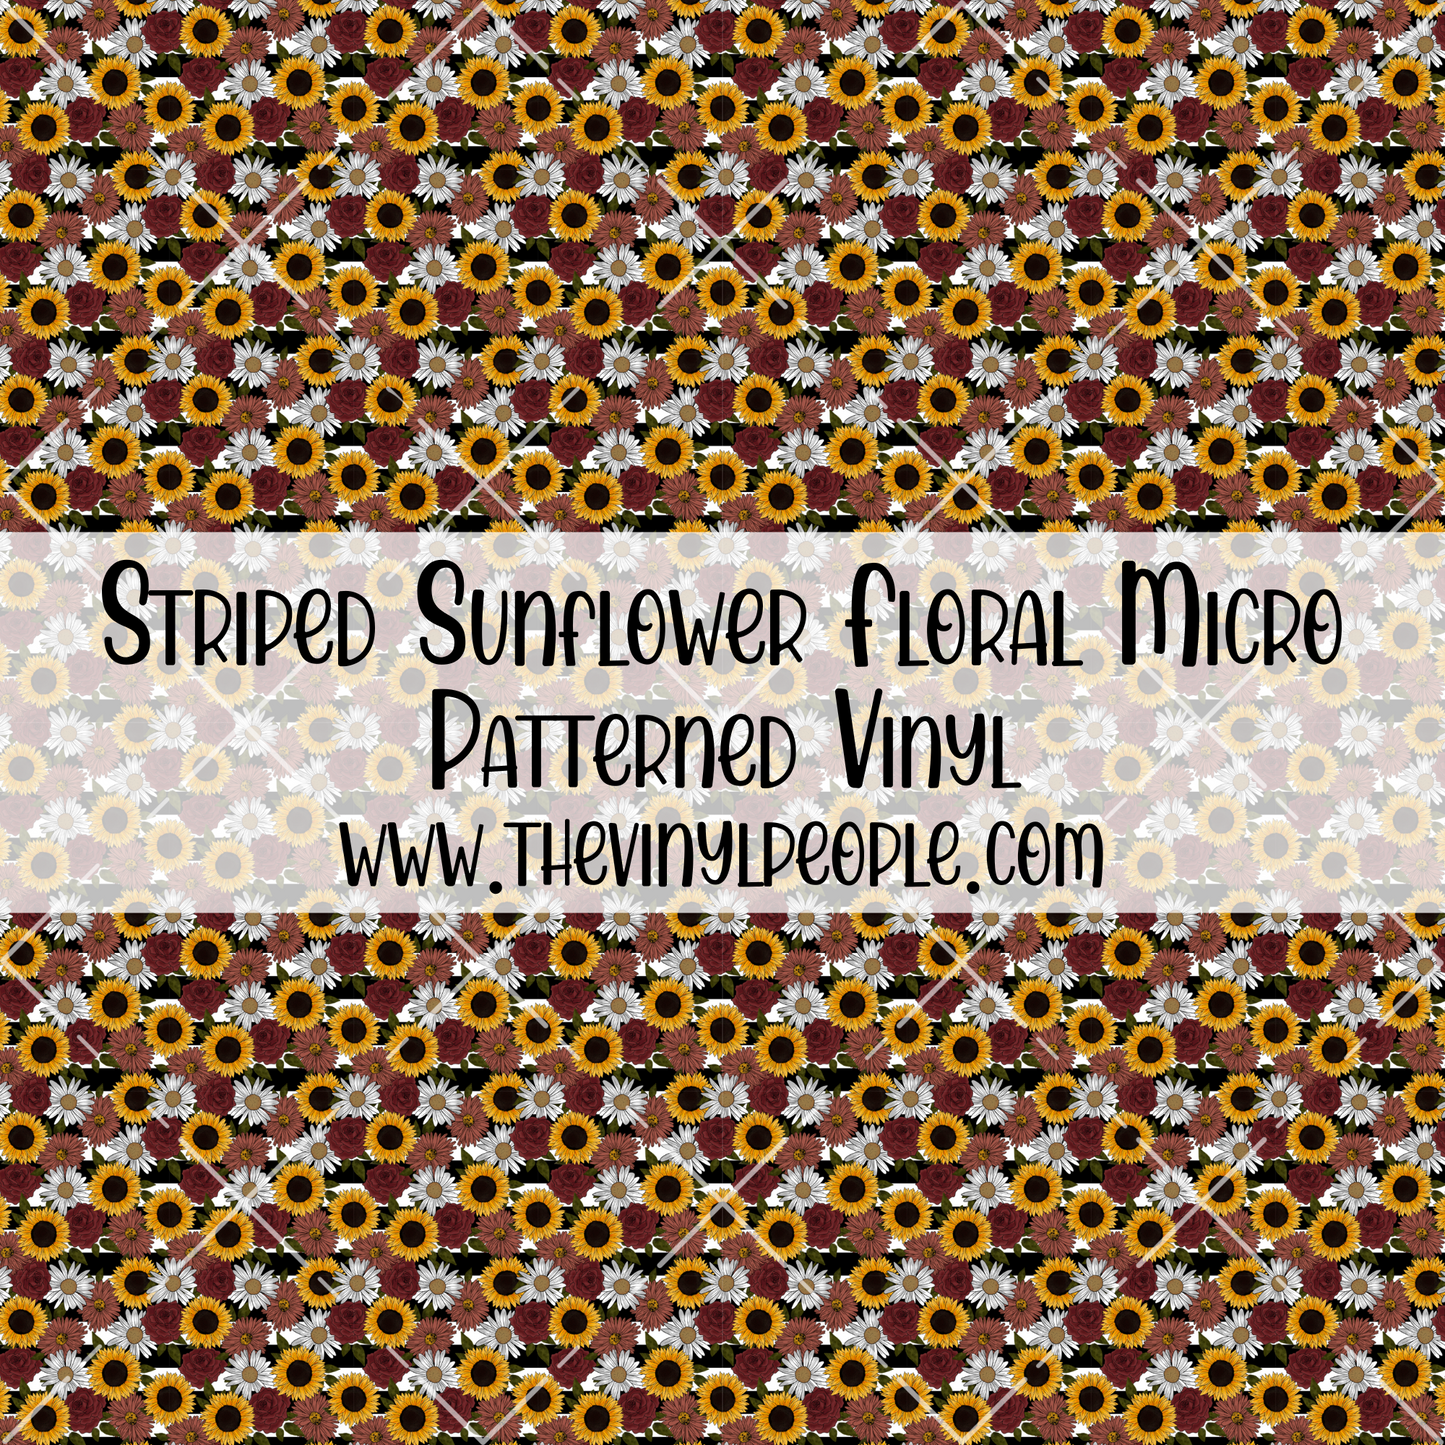 Striped Sunflower Floral Patterned Vinyl